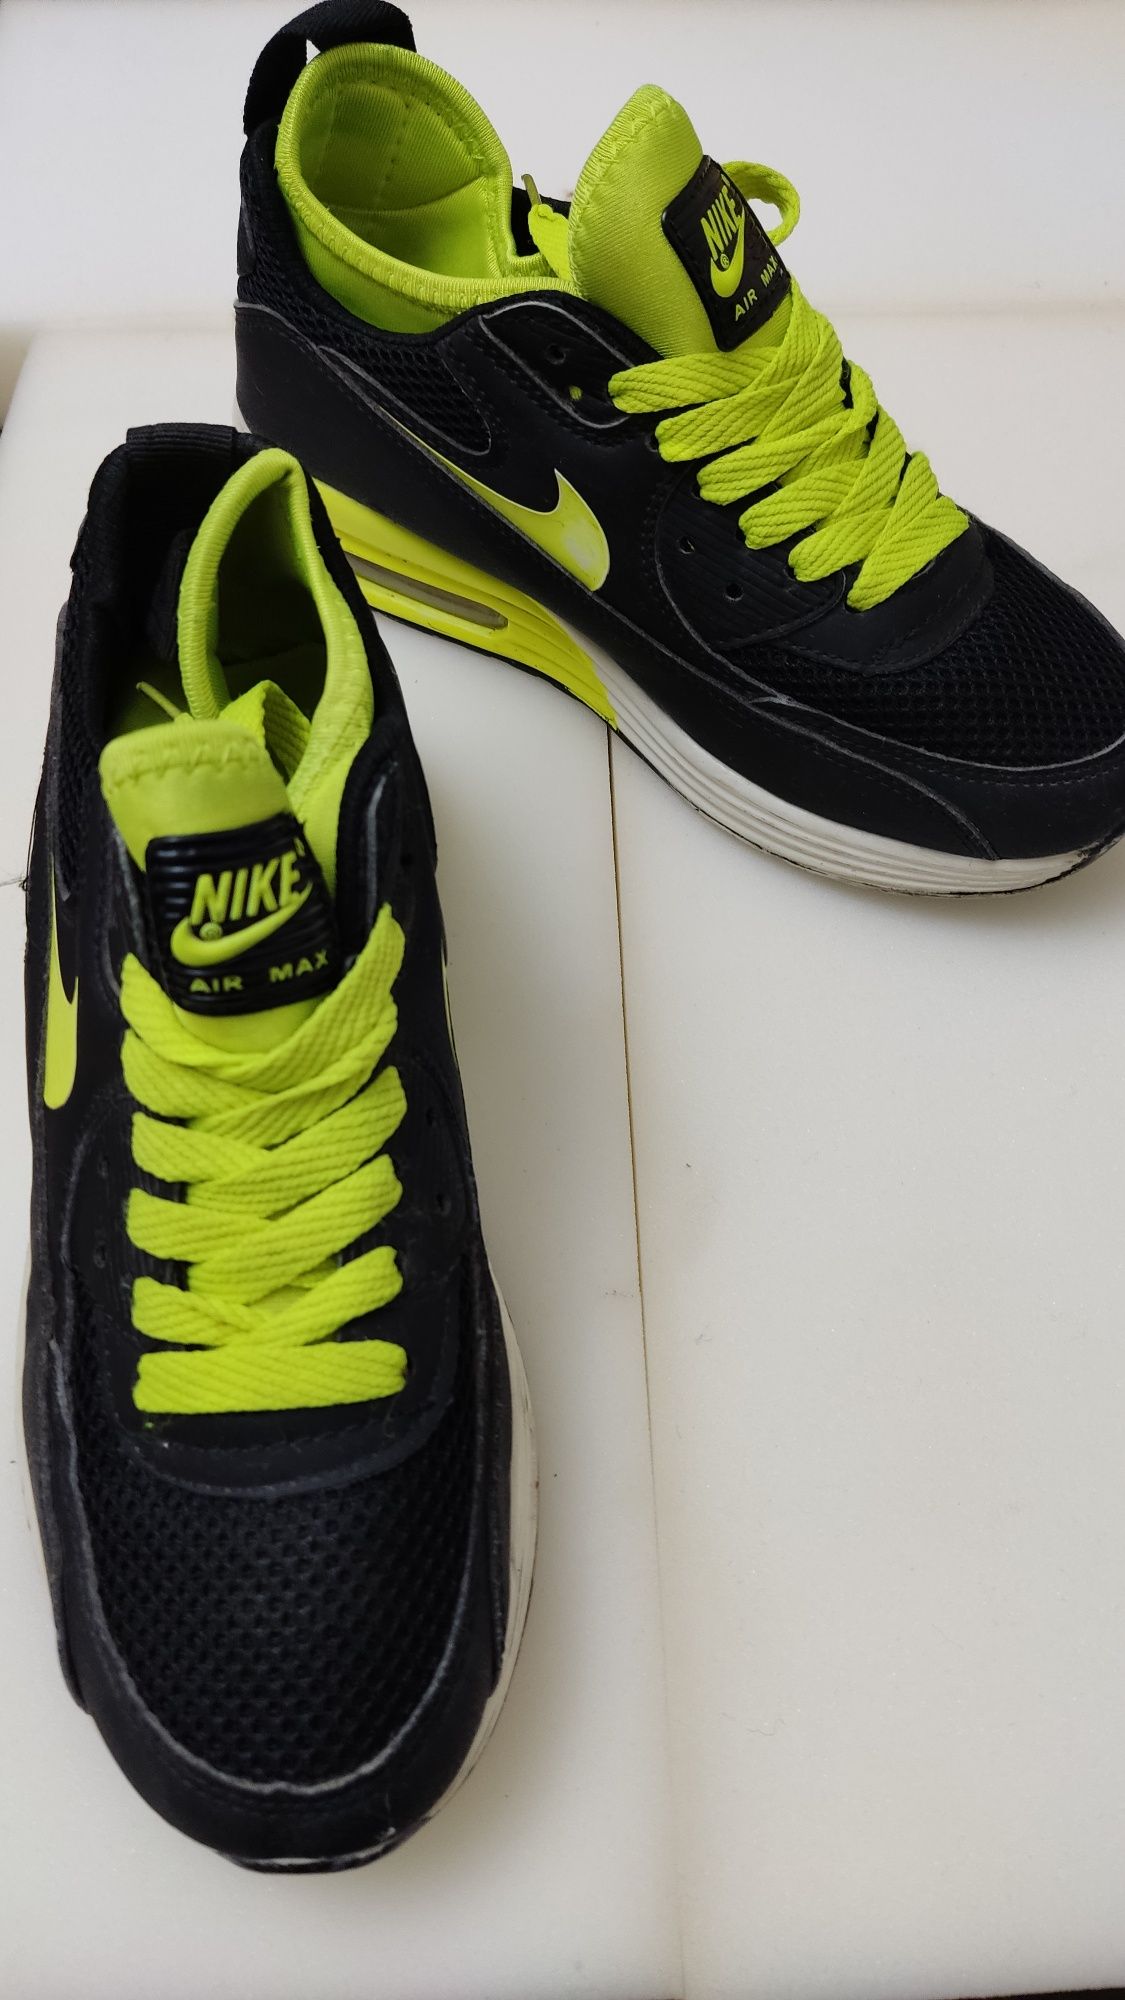 Кроссовки фирмы Nike орегинал привозные, одели несколько раз.